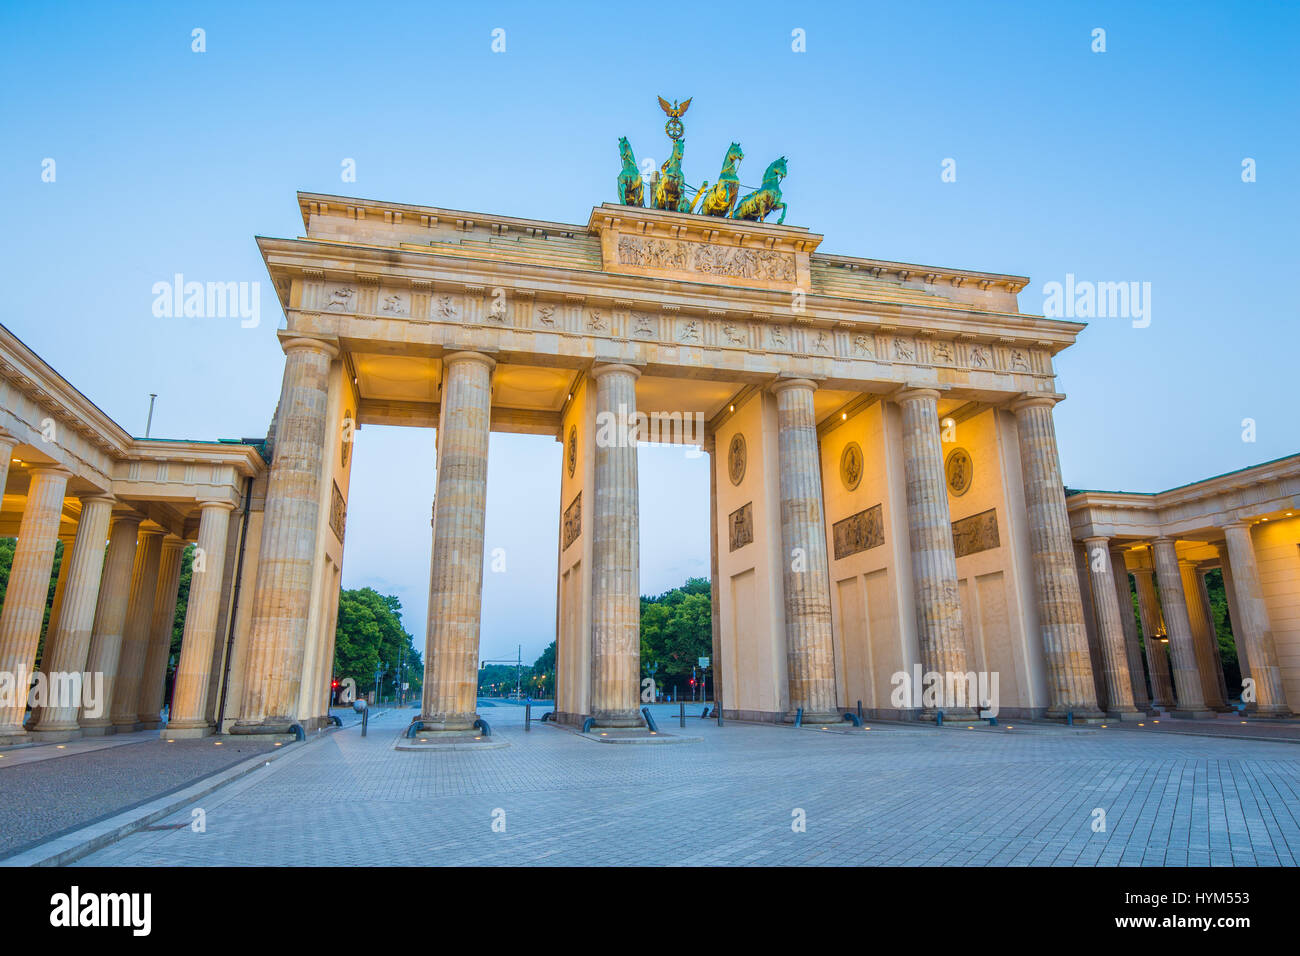 La vue classique du célèbre Brandenburger Tor (Porte de Brandebourg), l'un des plus célèbres monuments et symboles nationaux de l'Allemagne, au crépuscule pendant blue Banque D'Images